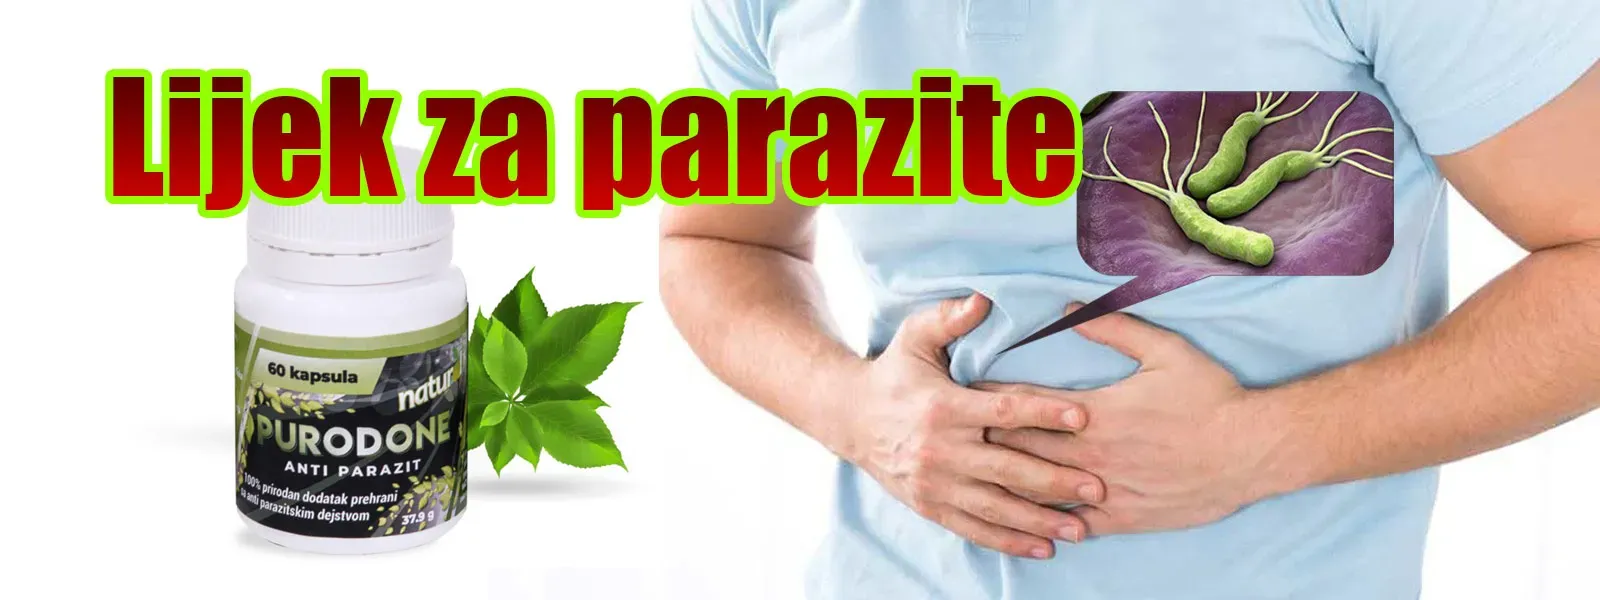 Paraziti u usima kod ljudi u apotekama - Srbija - cena - komentari - iskustva - upotreba - forum - gde kupiti.